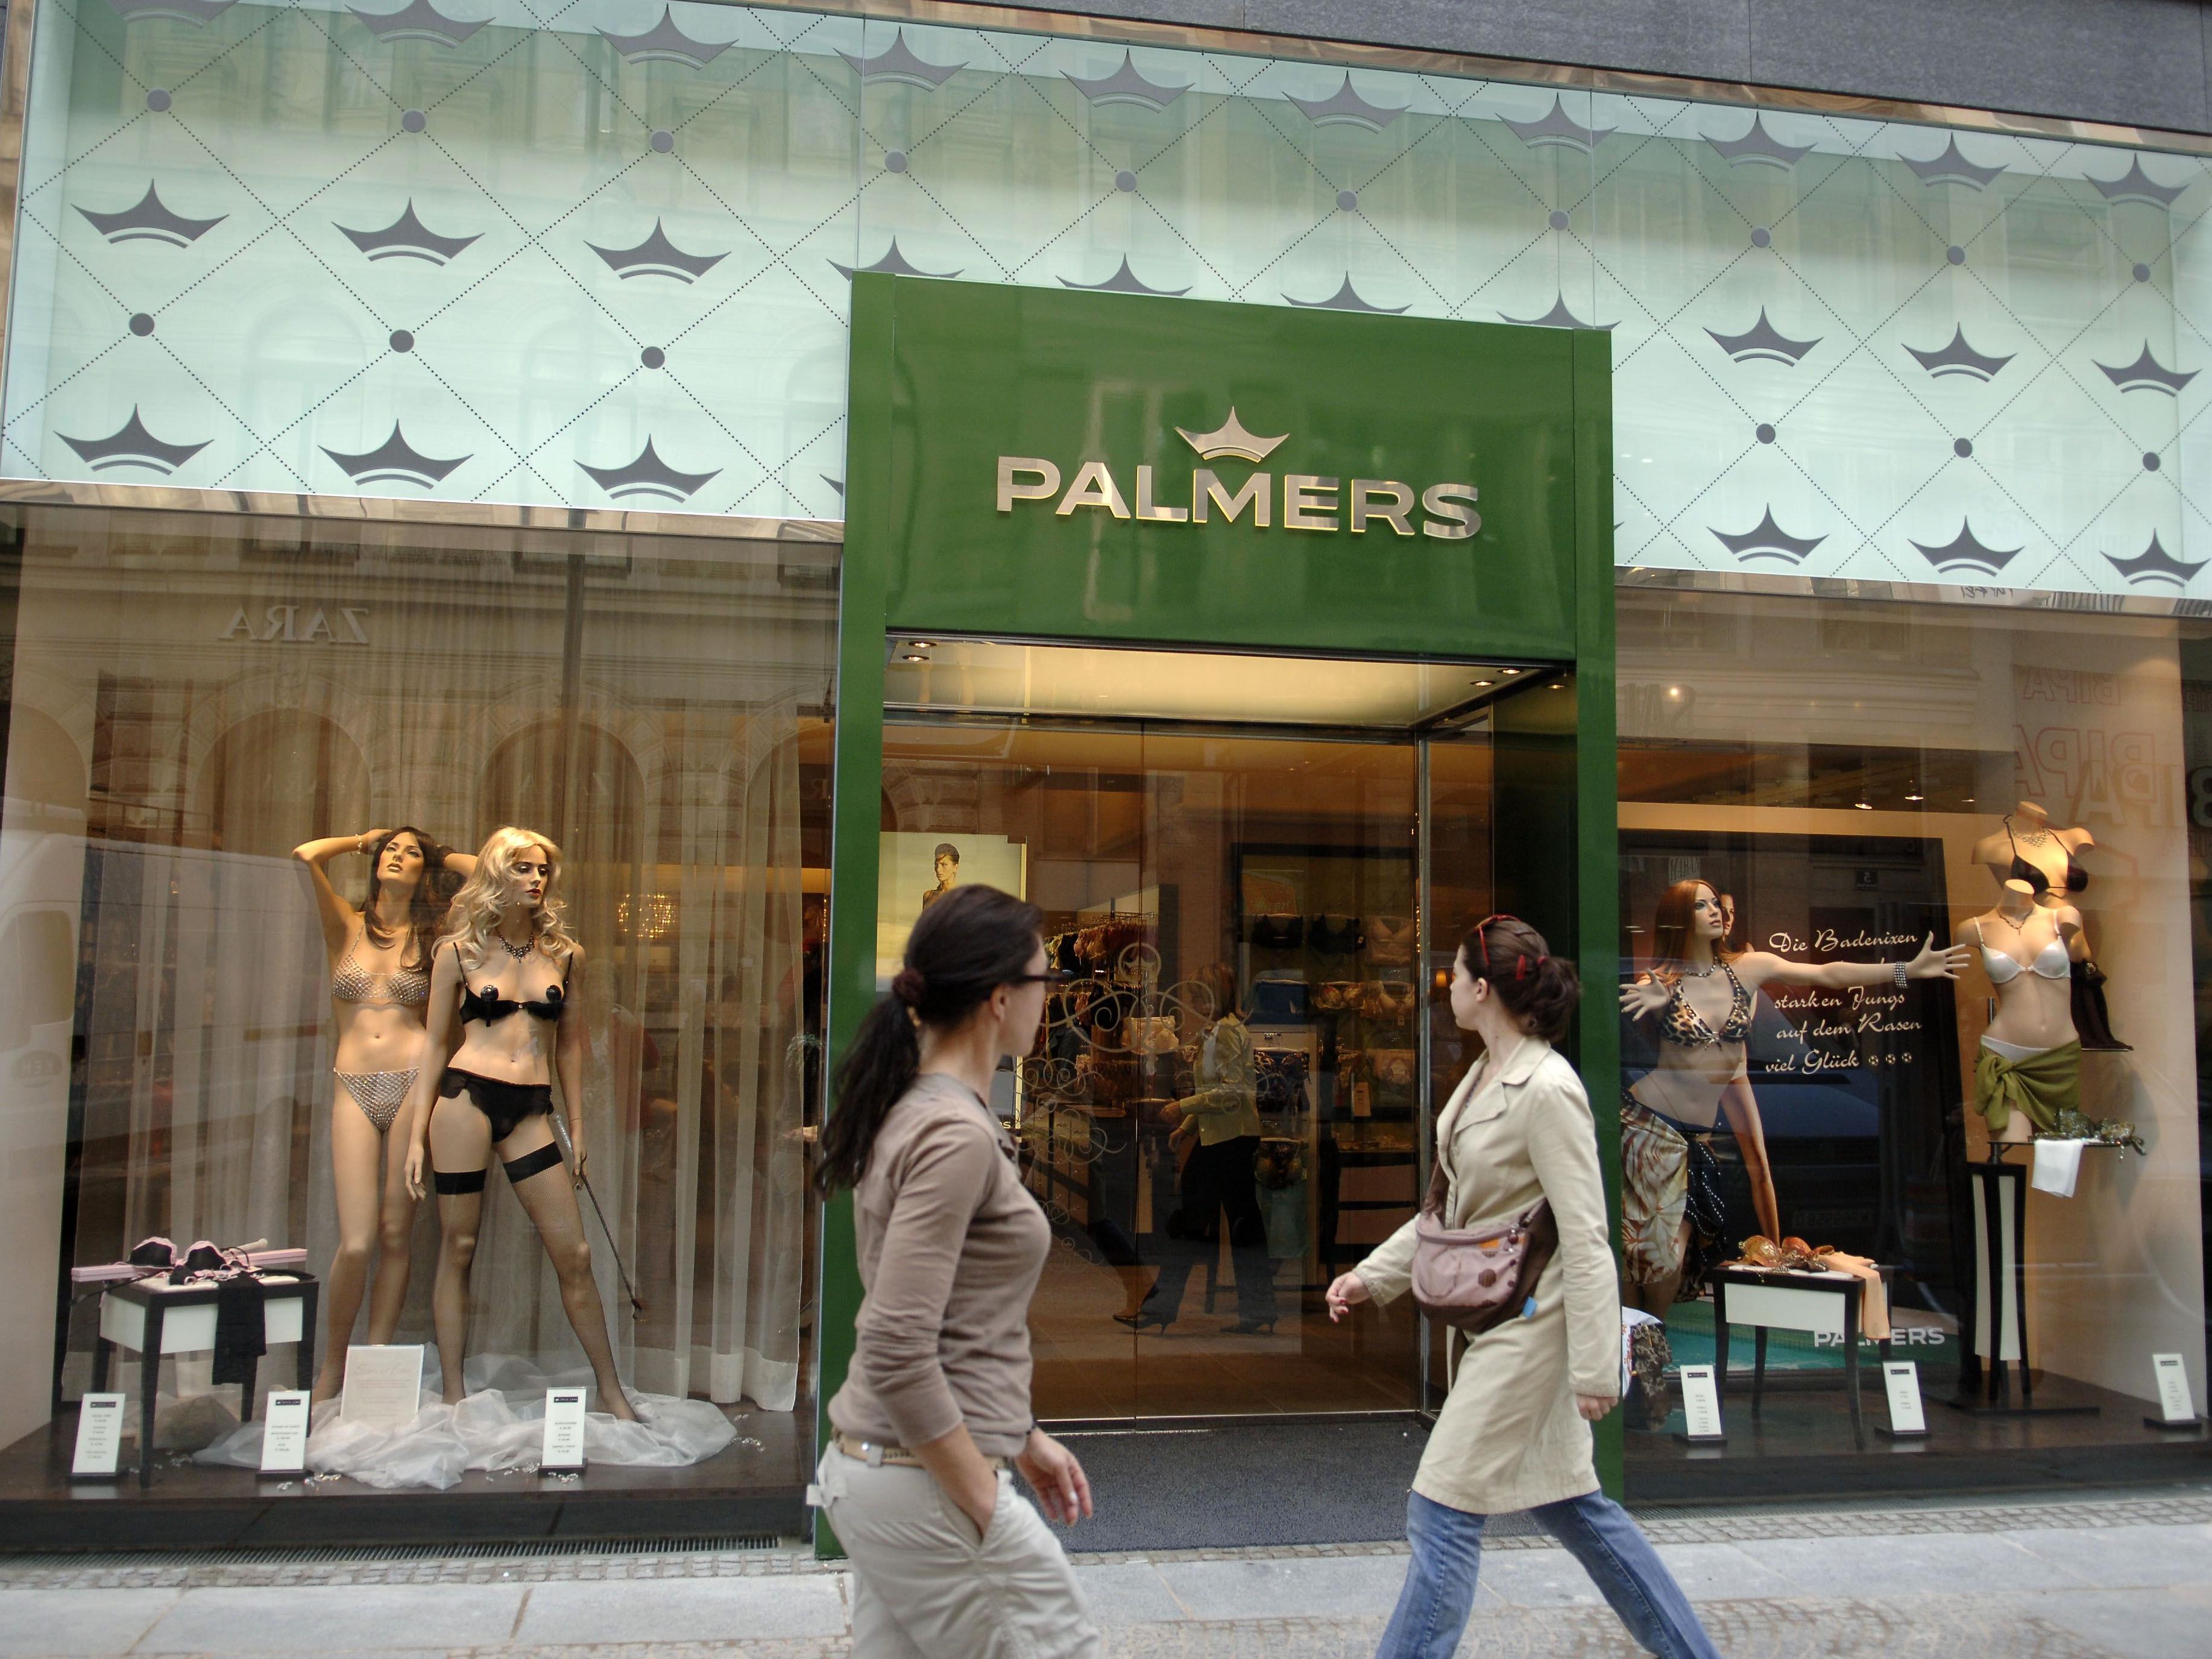 Palmers bestätigt: Haben kranke Mitarbeiterin ausspionieren lassen